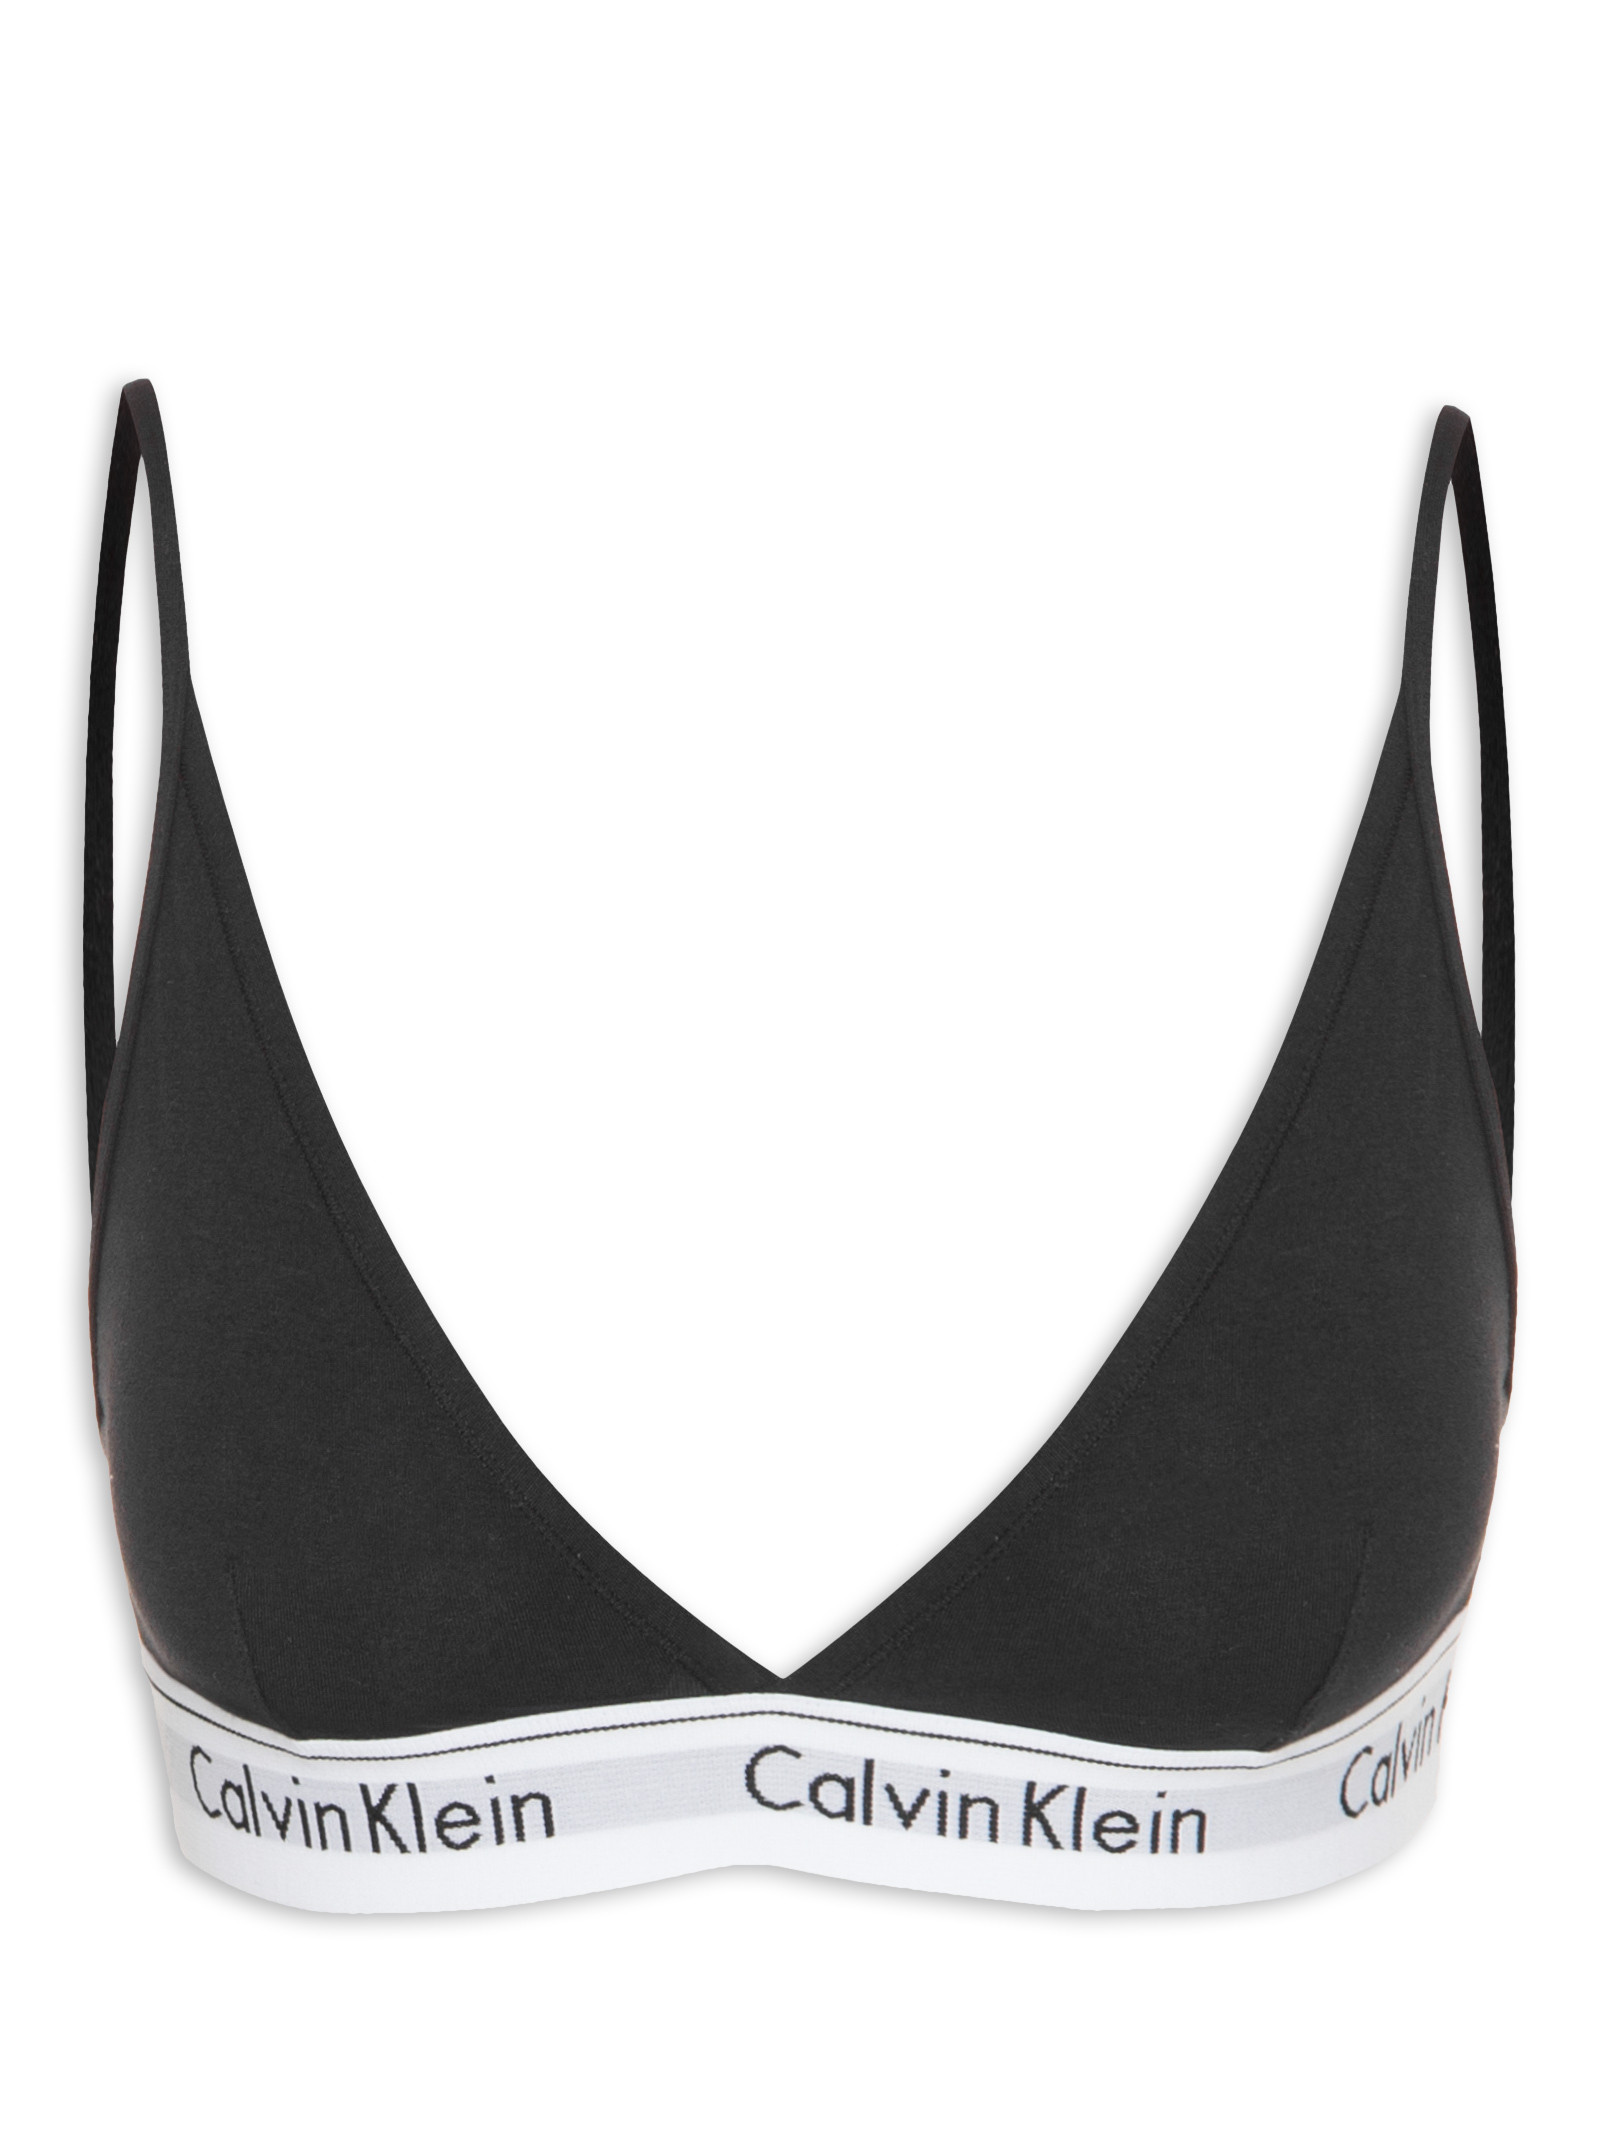 Top Triângulo Modern Cotton - Calvin Kleans Underwear - Preto - Shop2gether